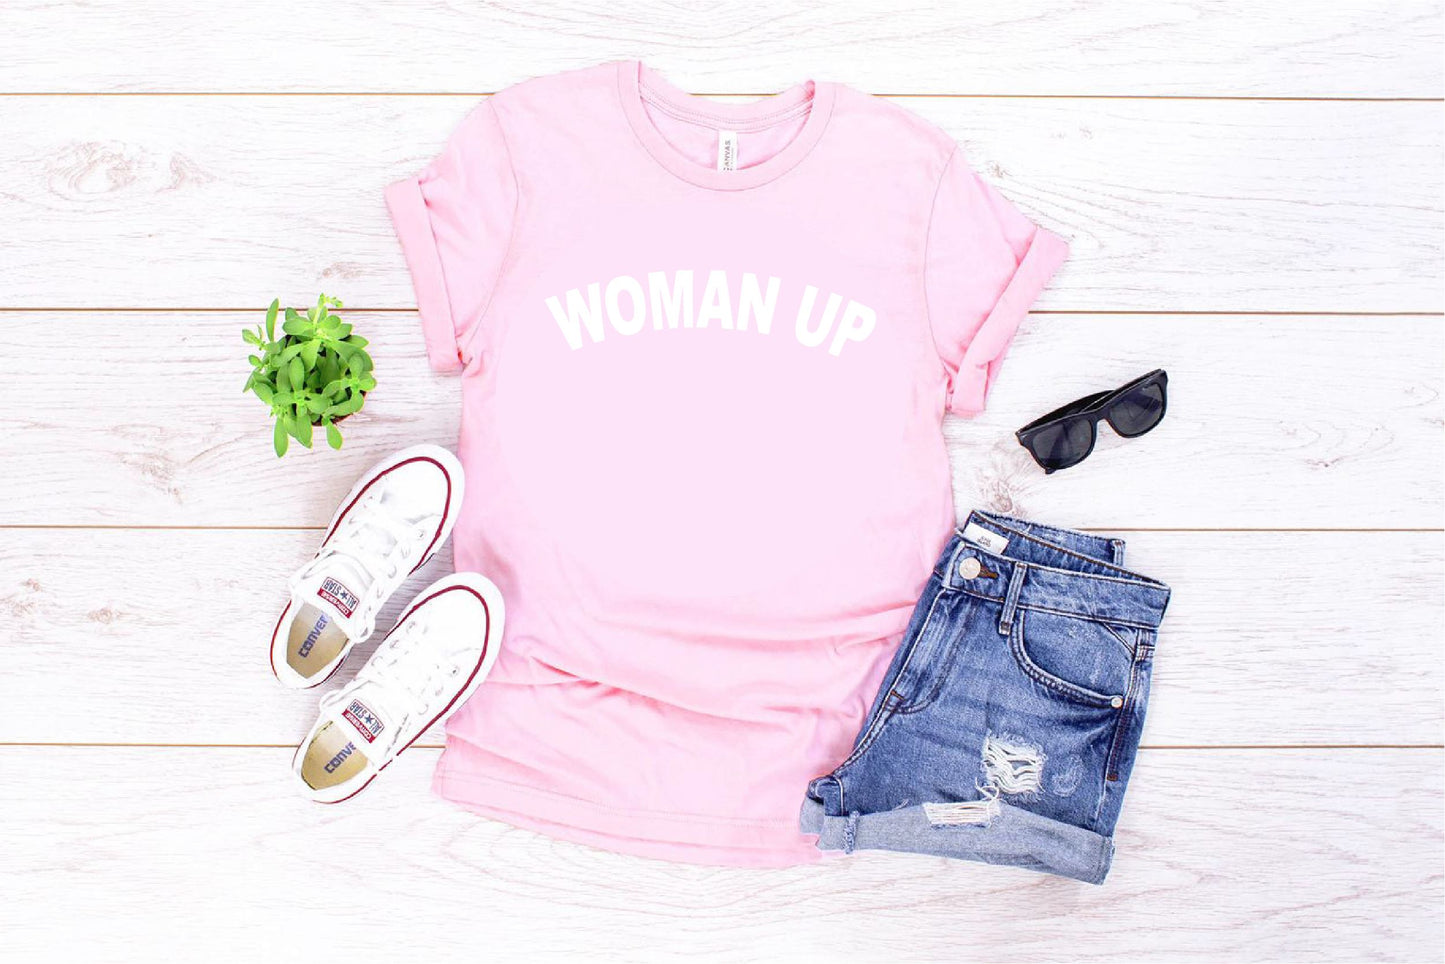 Woman Up Feminist T-shirt